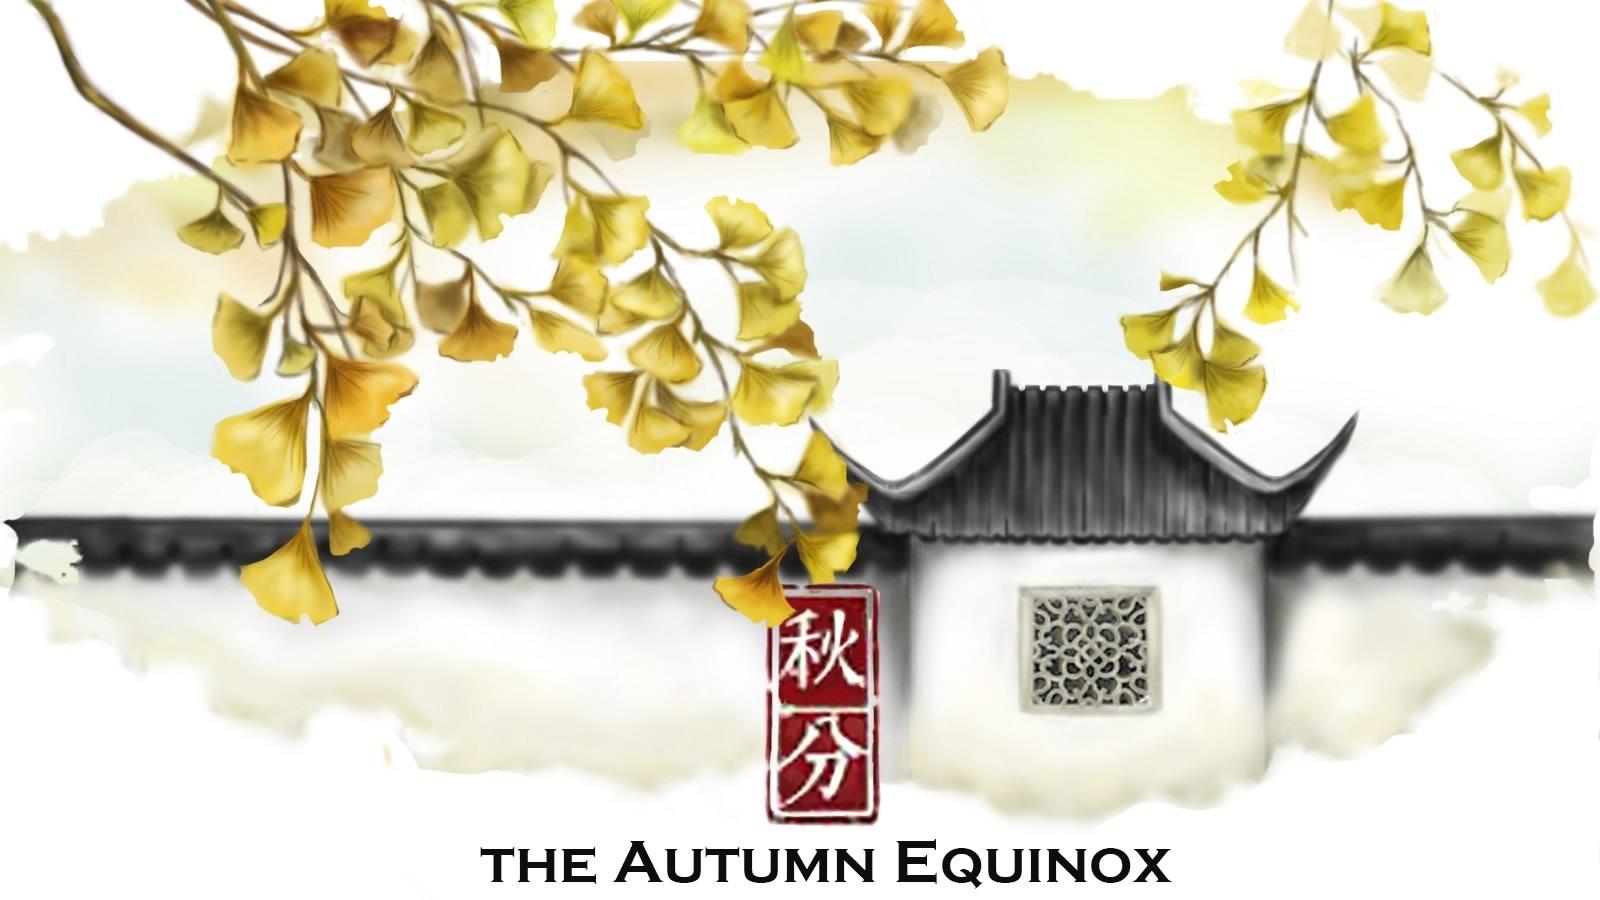 Qiu Fen: Goldener Herbst, eine Zeit der Ernte und des Festes